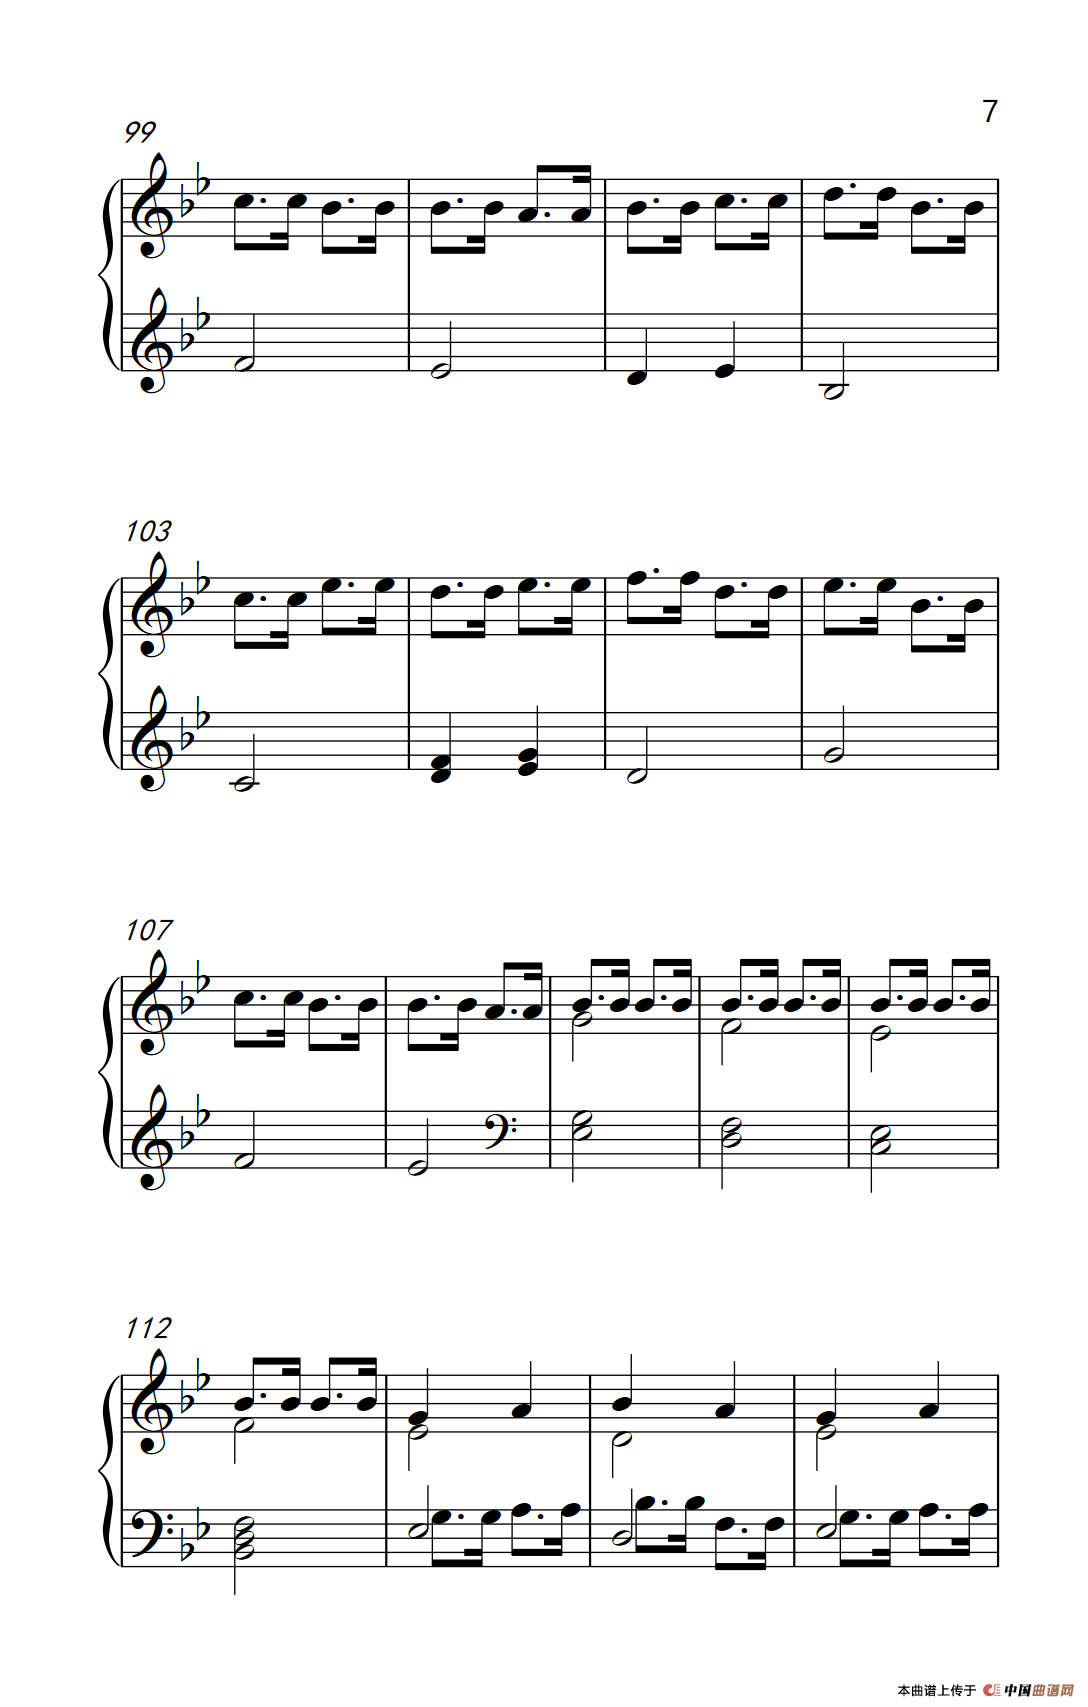 《魔法密林》钢琴曲谱图分享